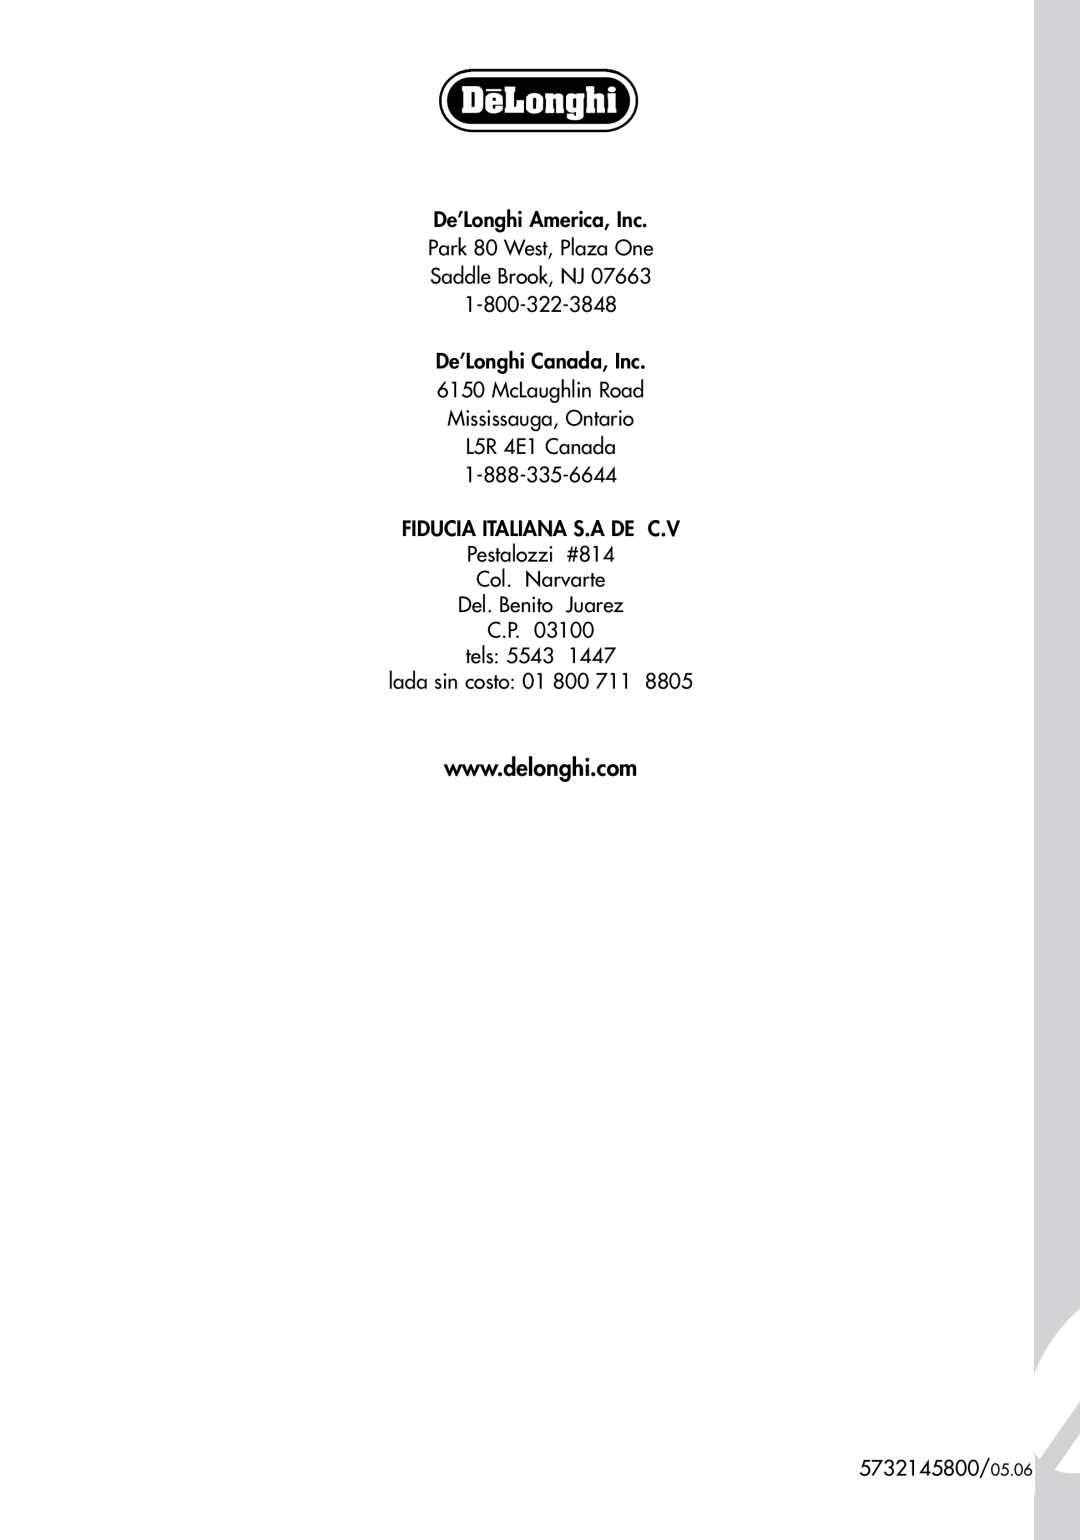 DeLonghi EC155 manual De’Longhi America, Inc Park 80 West, Plaza One, De’Longhi Canada, Inc, Fiducia Italiana S.A De C.V 